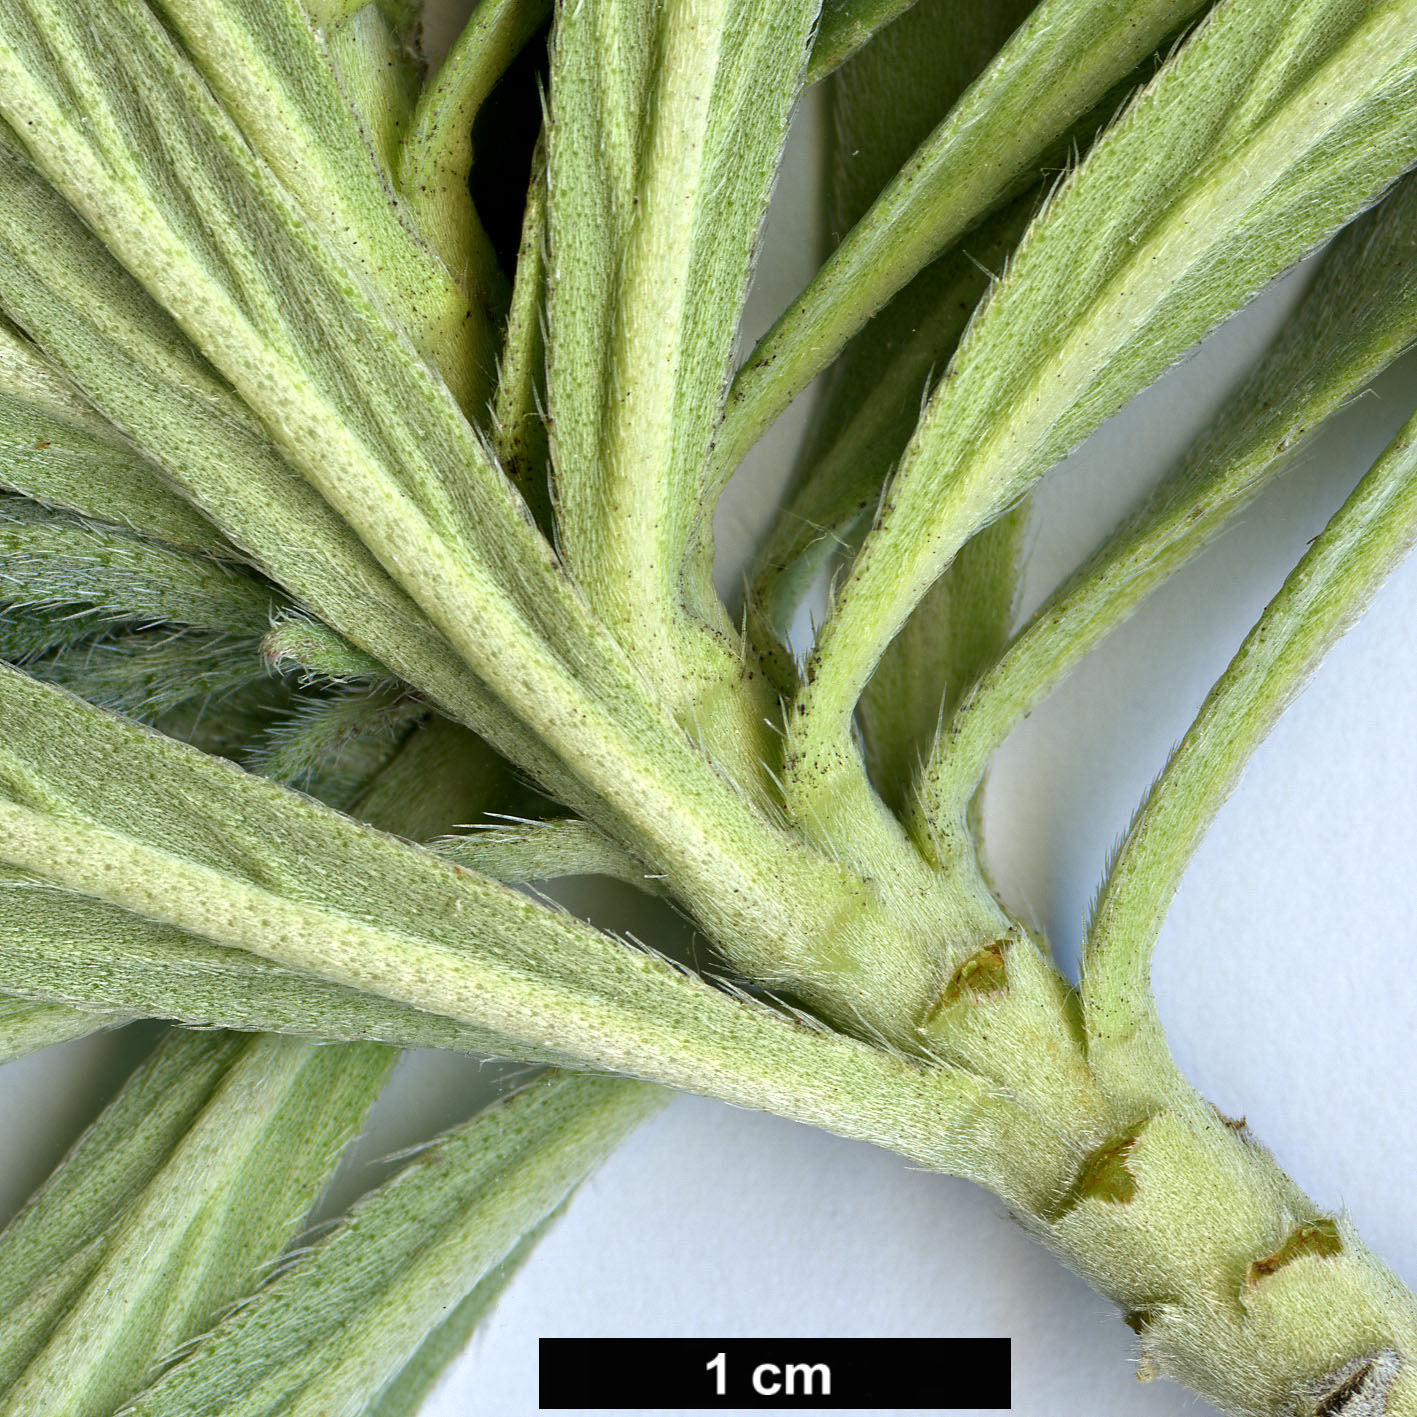 High resolution image: Family: Boraginaceae - Genus: Echium - Taxon: aculeatum